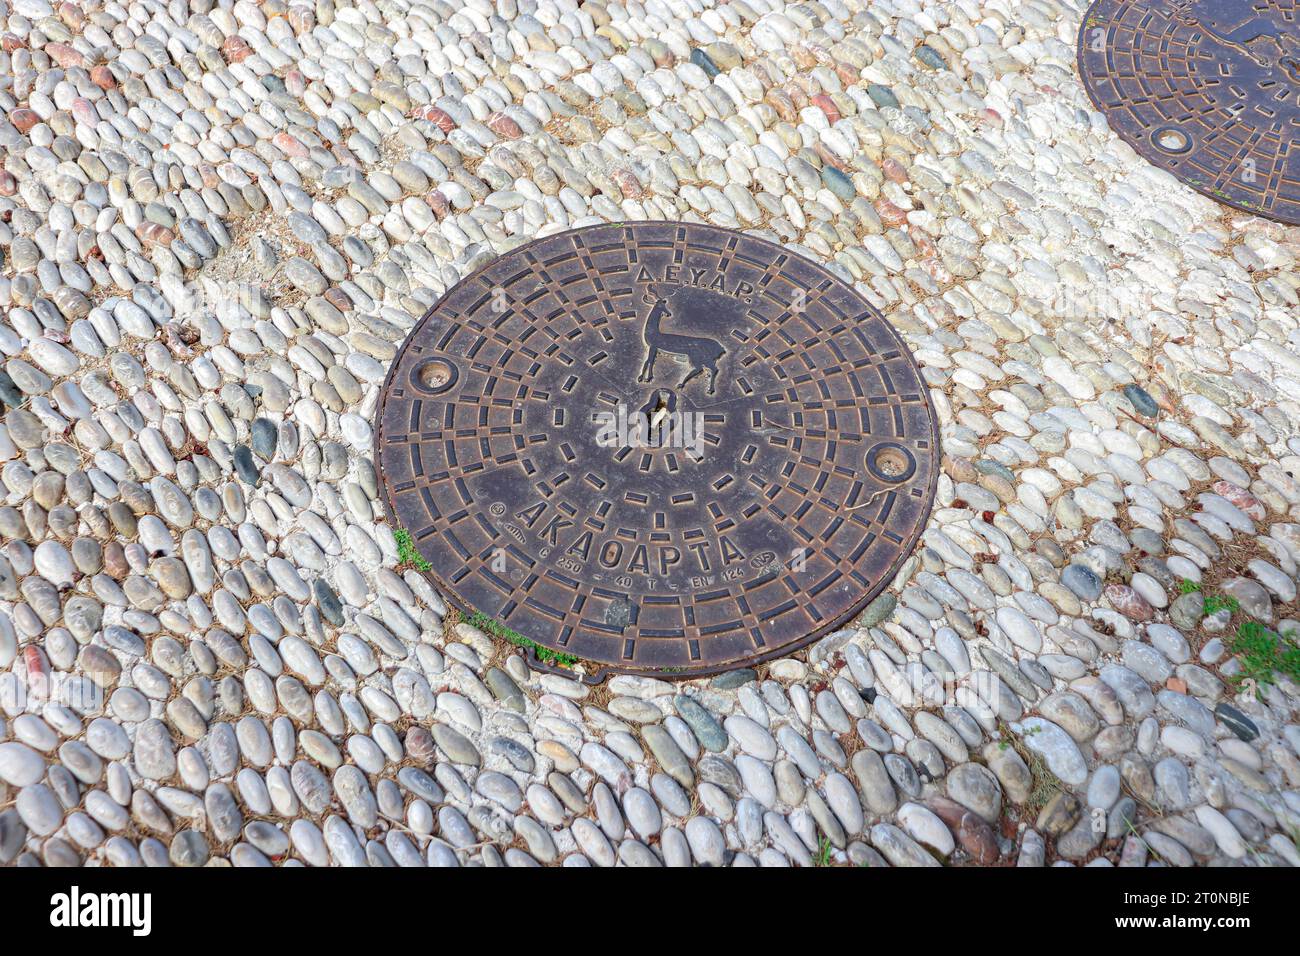 Couvercle rond de trou d'homme, une plaque amovible recouvrant une ouverture dans le sol conçue pour l'Acropole de Rhodes Banque D'Images